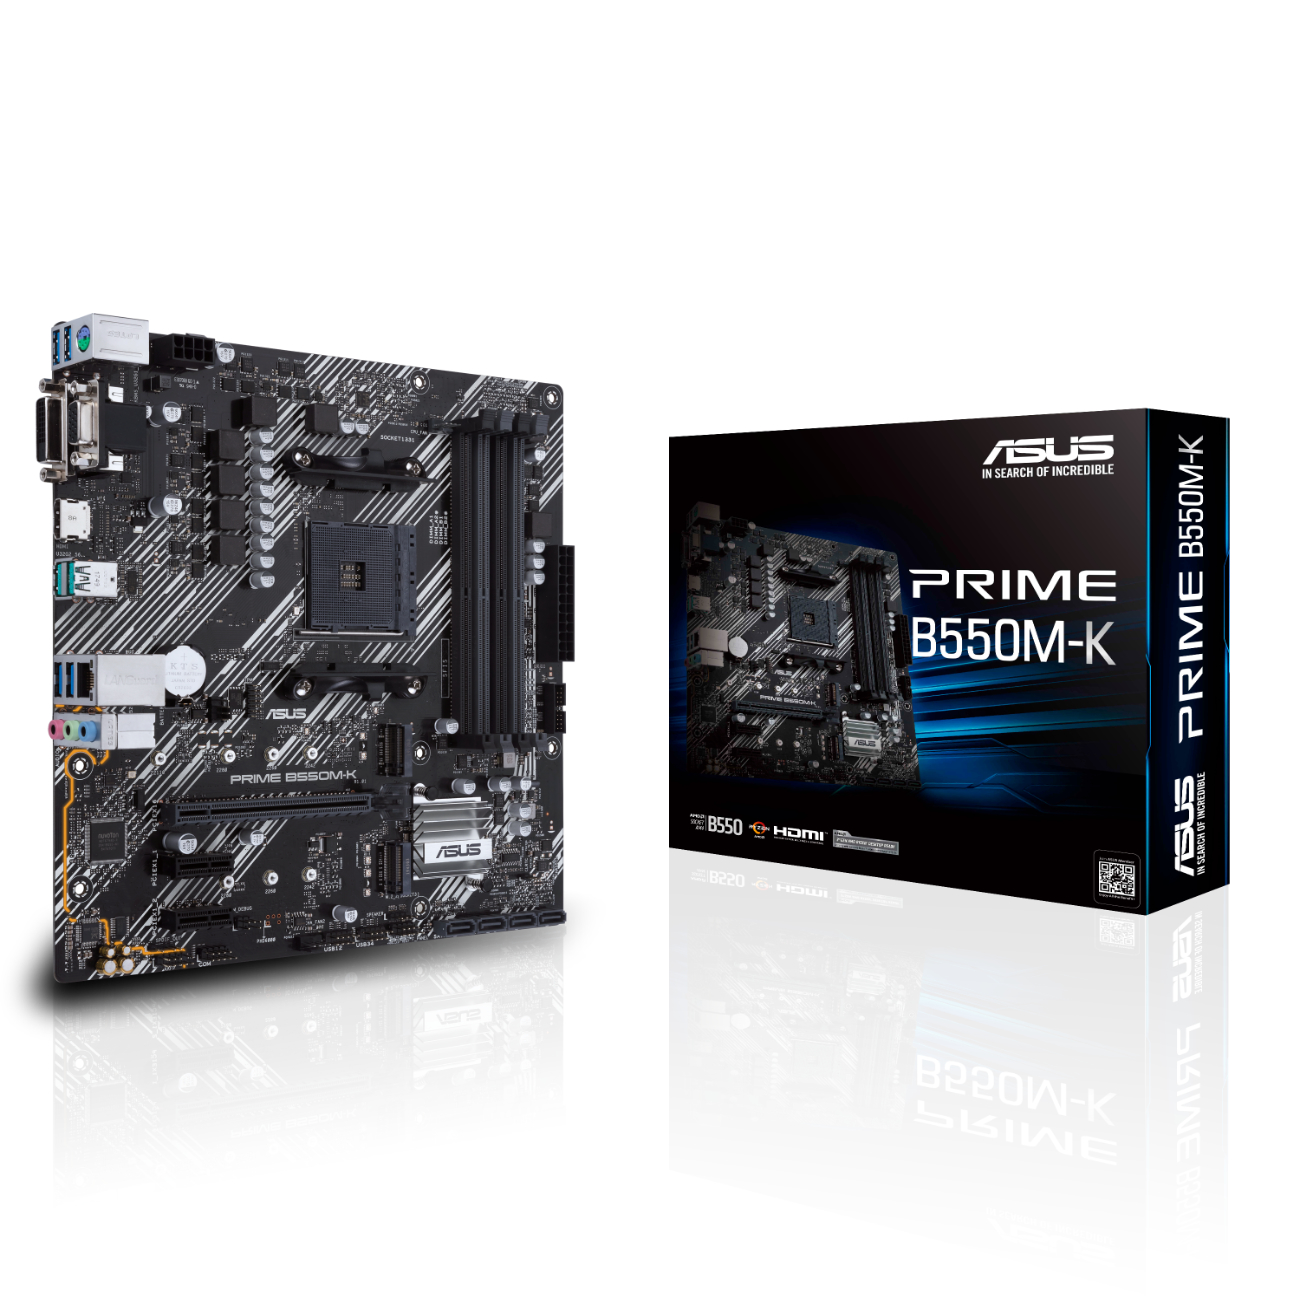 MB ASUS PRIME B550M-K (AMD,AM4,DDR4,mATX) - 90MB14V0-M0EAY0